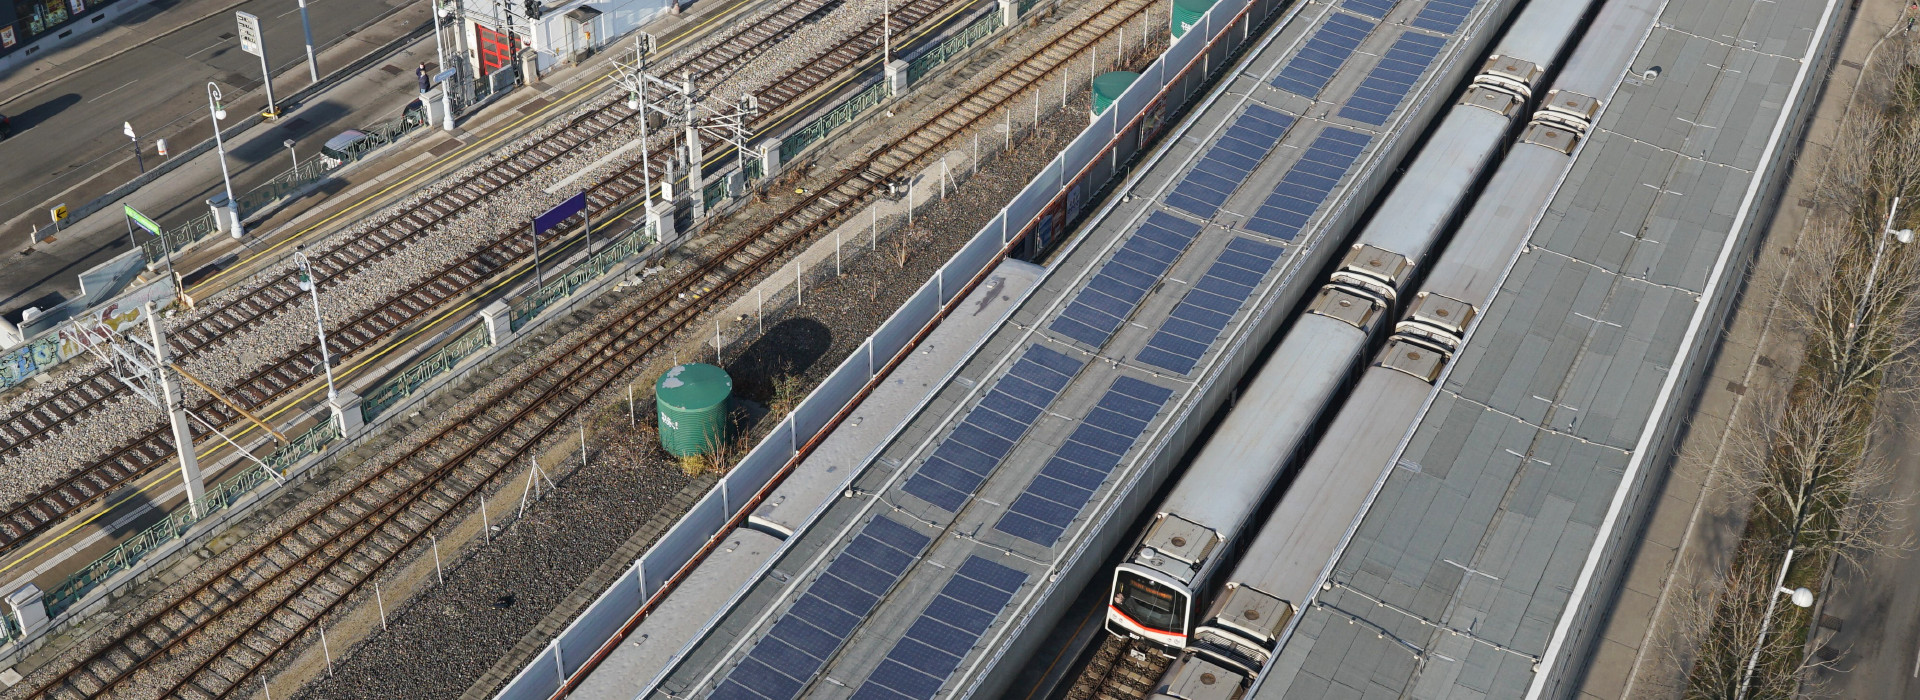 Solarmodule liefern Strom für U-Bahnstation